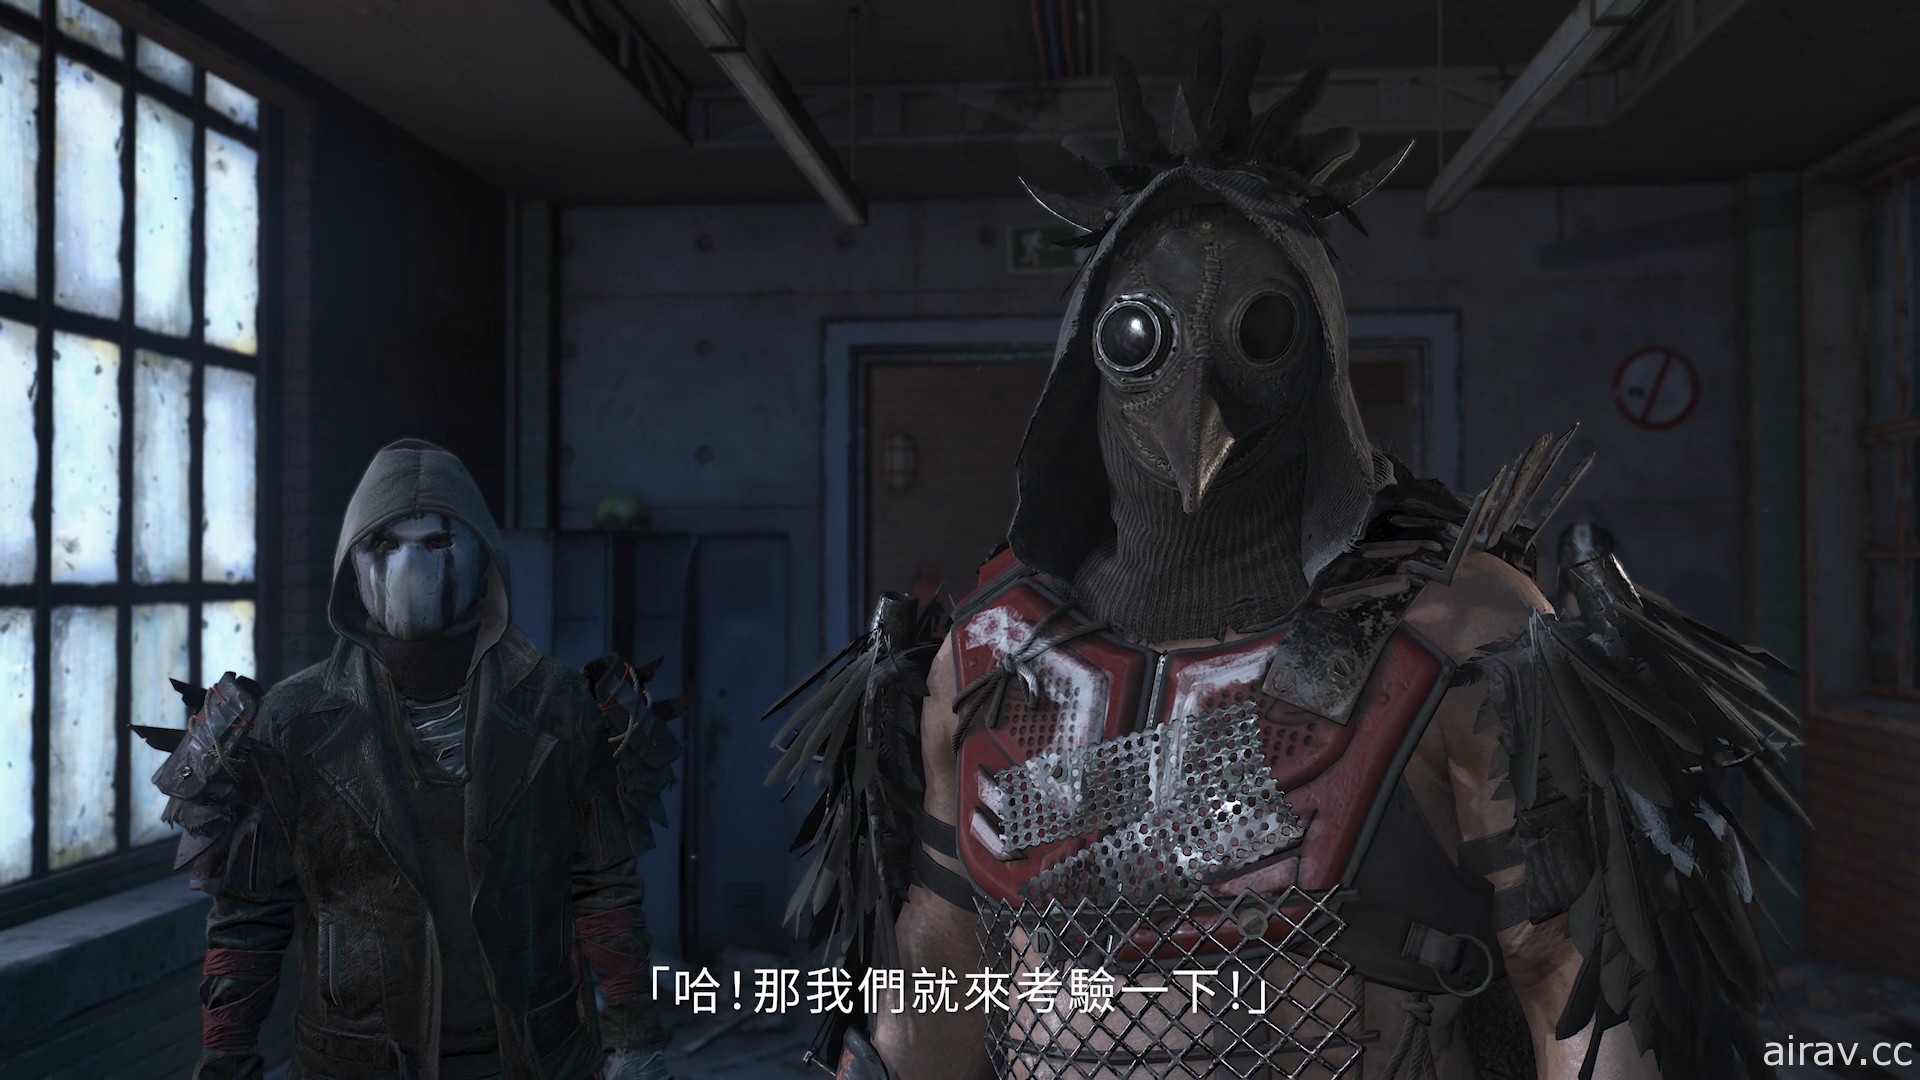 《垂死之光 2》释出新游戏实机影片“决定命运篇” 主角艾登日语配音由花轮英司演出